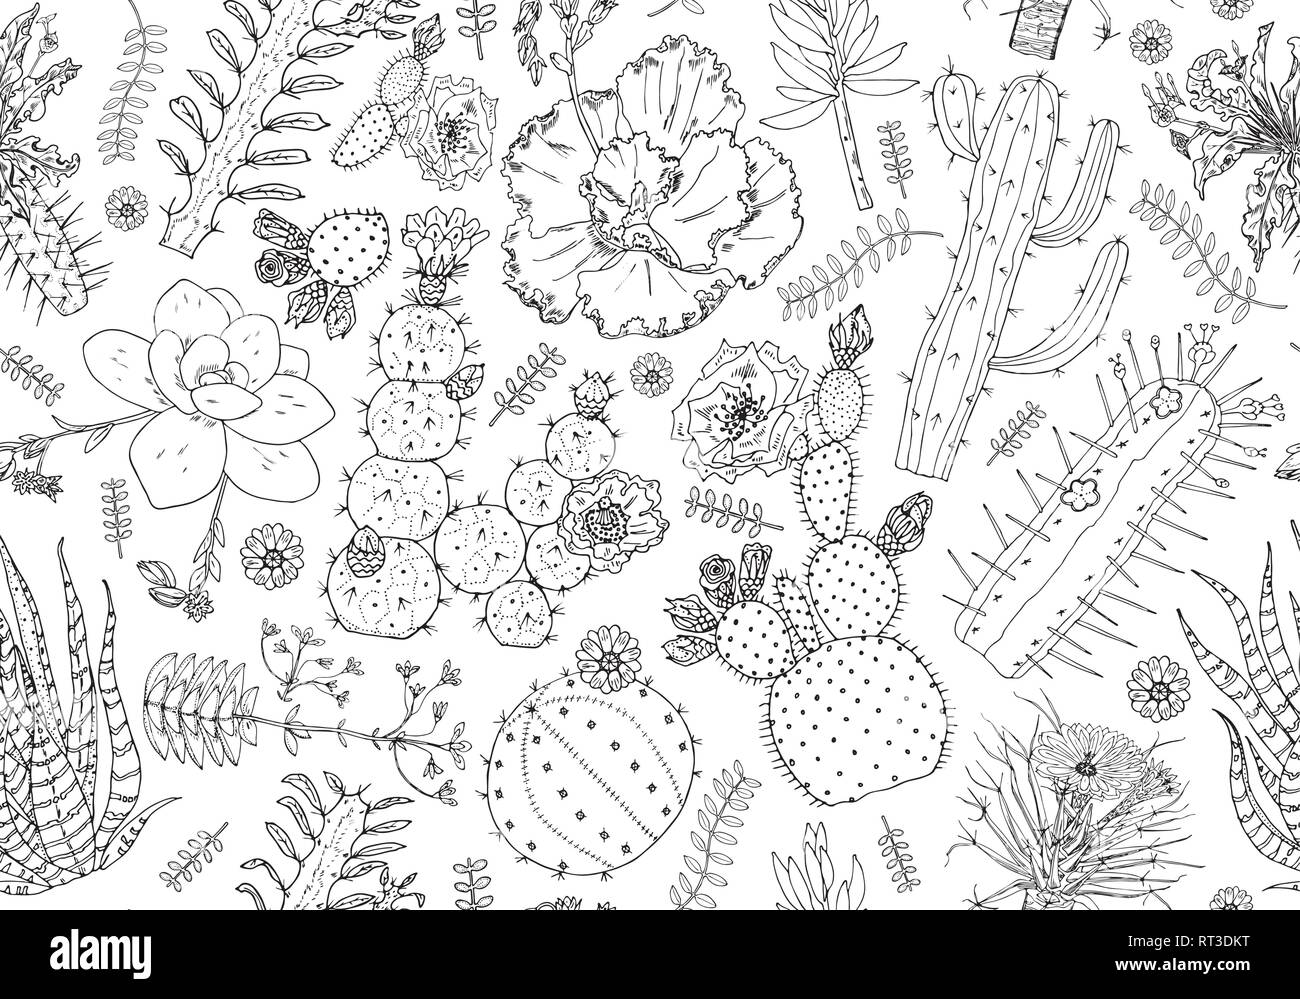 Patrón sin fisuras de cactus y flores. Elementos lindo acogedor. Colección de suculentas y plantas tropicales en doodle estilo vintage. Grabado dibujado a mano Ilustración del Vector